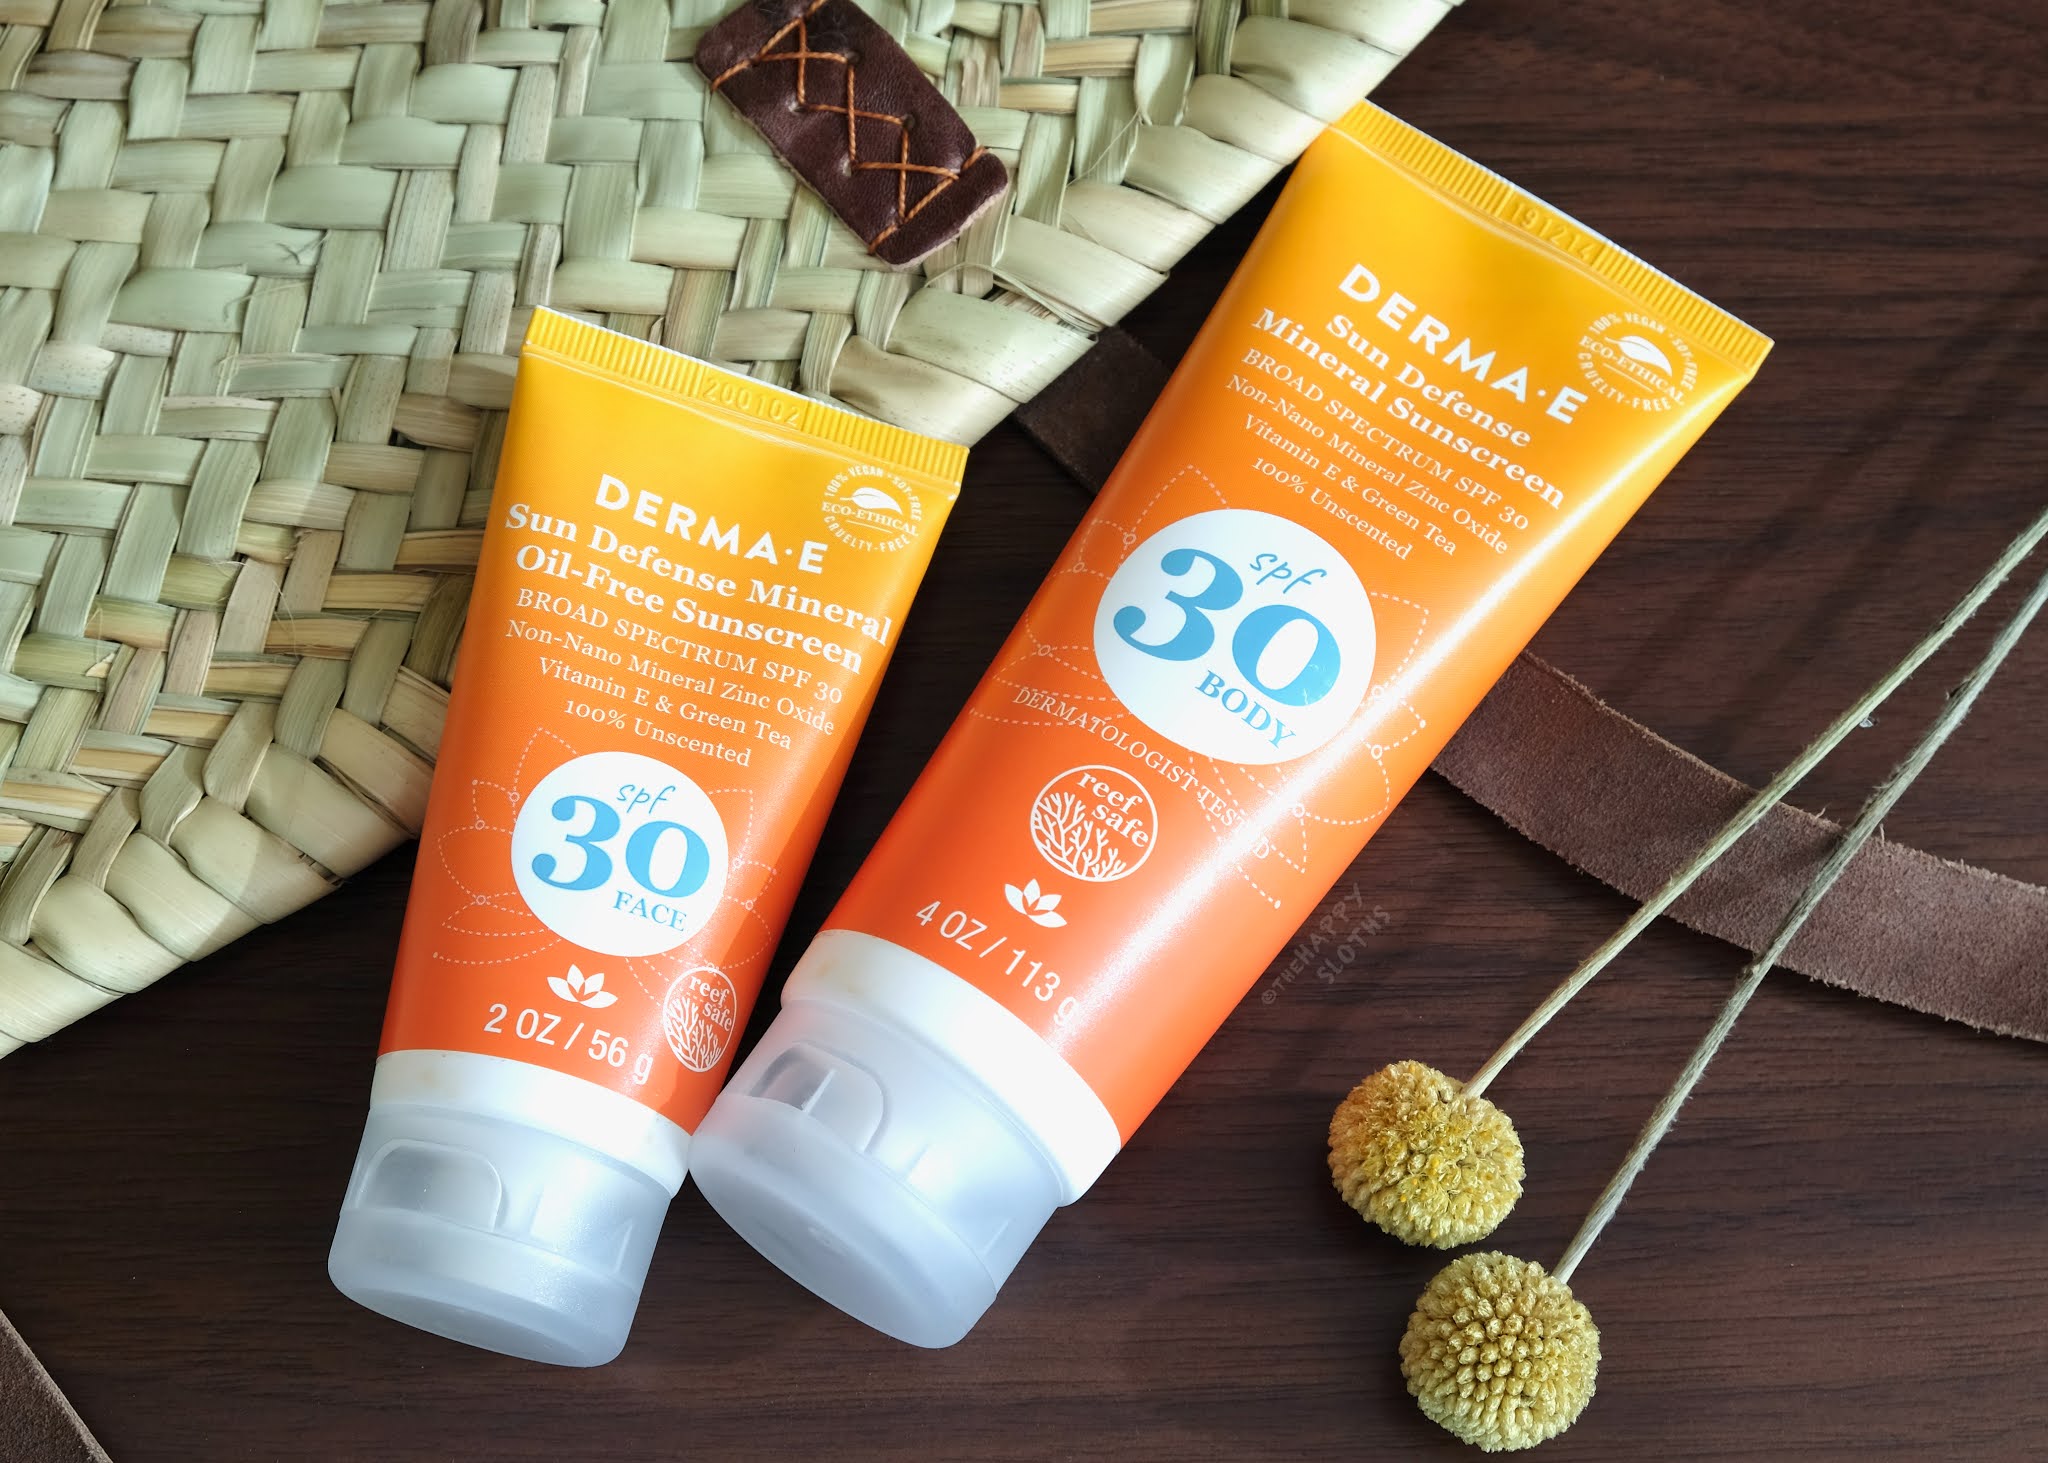 Derma E | Sun Defense Mineral Oil-Free Sunscreen Face & Body: Review